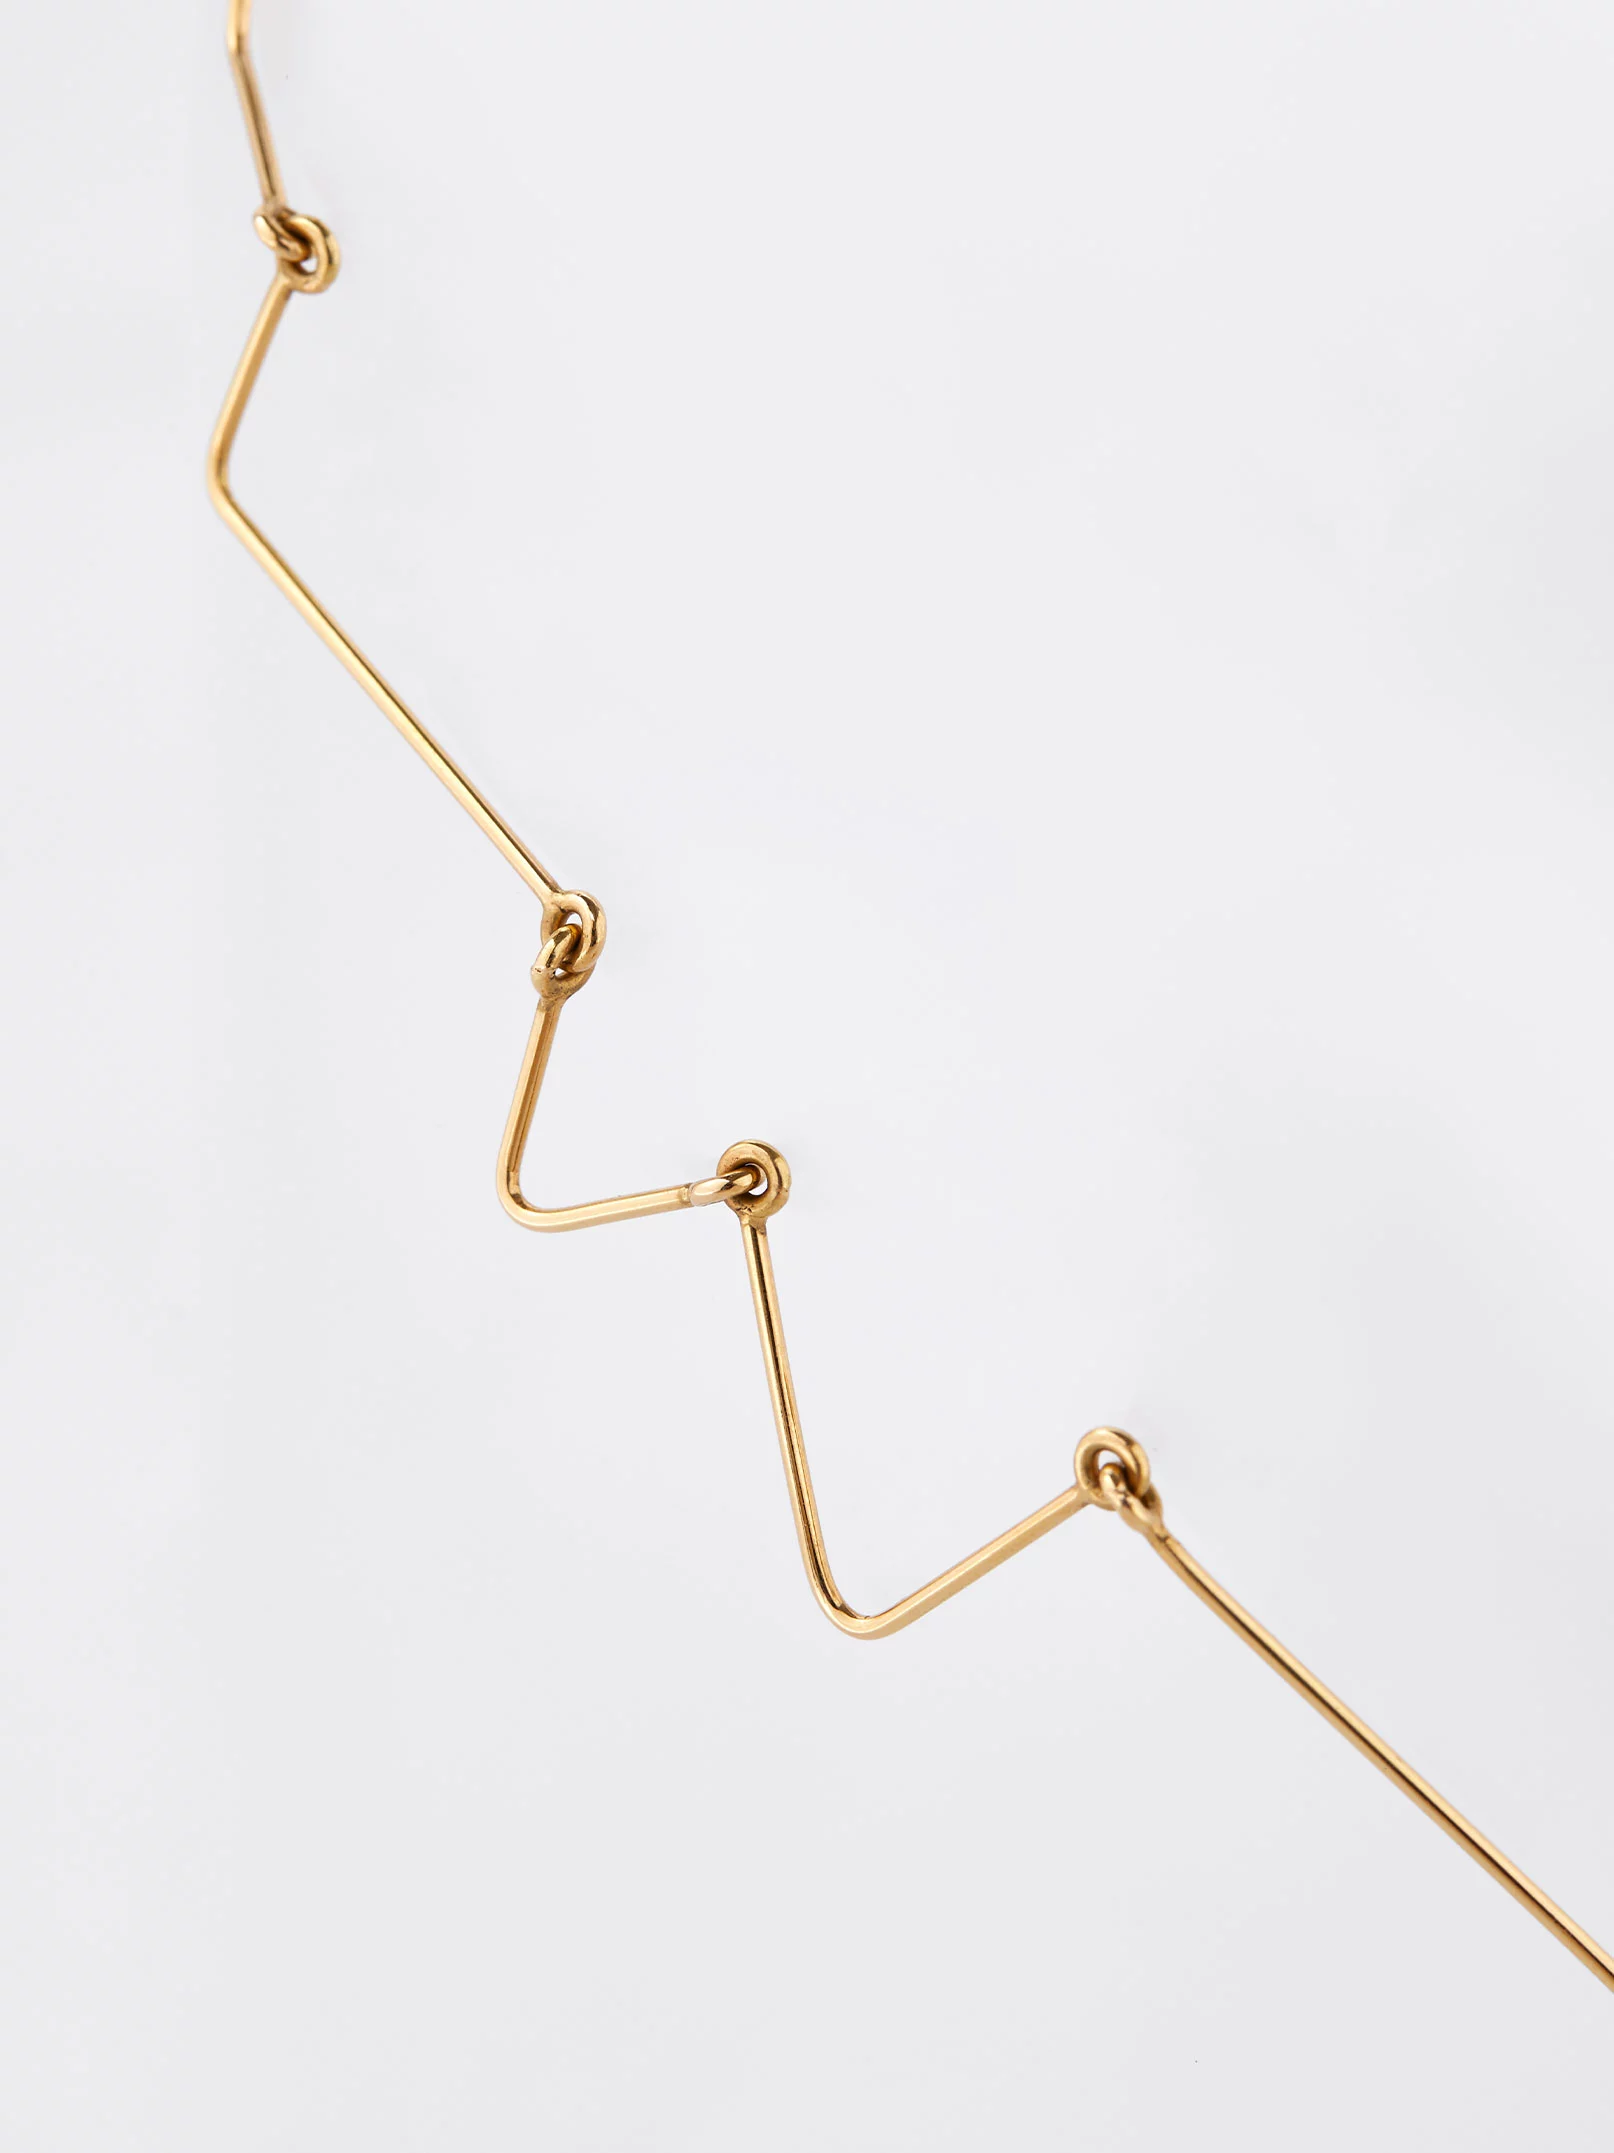 Cou de foudre Yellow Gold - Dominique Modiano - Jewellery - Galerie kreo